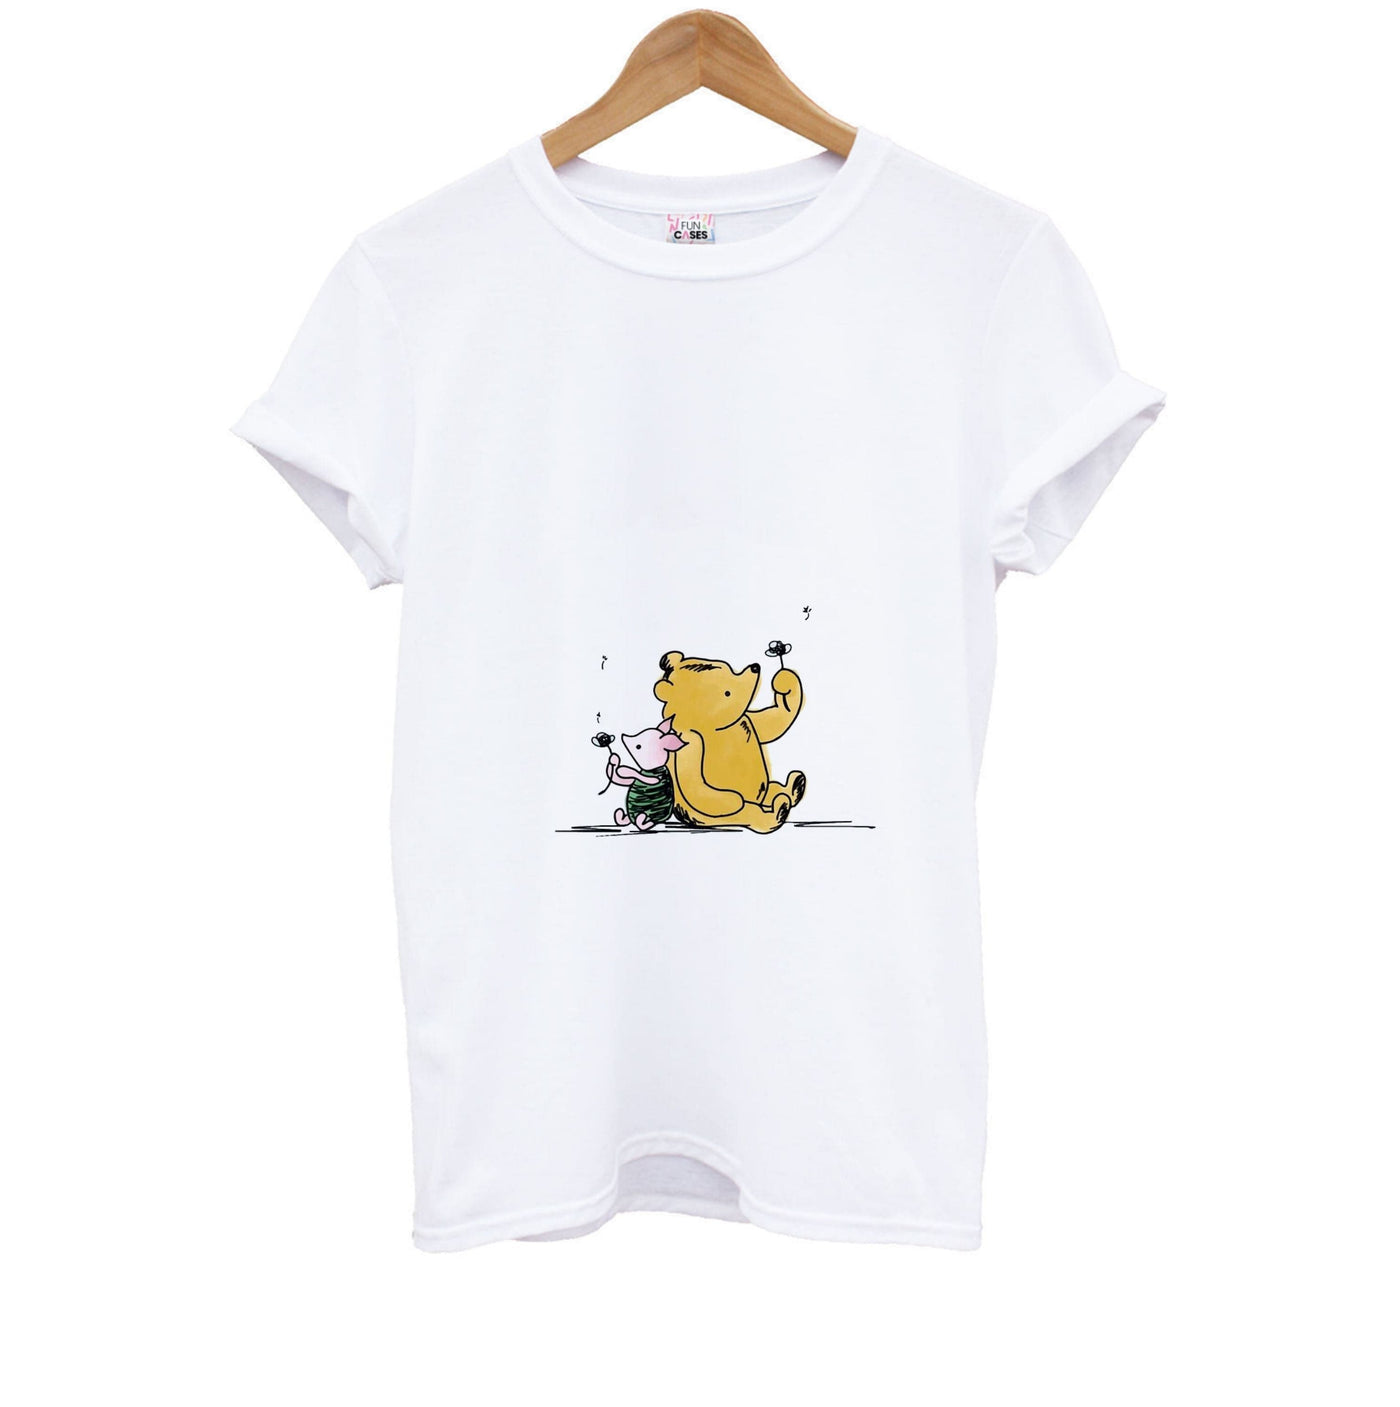 Winnie The Pooh & Piglet - Disney Kids T-Shirt